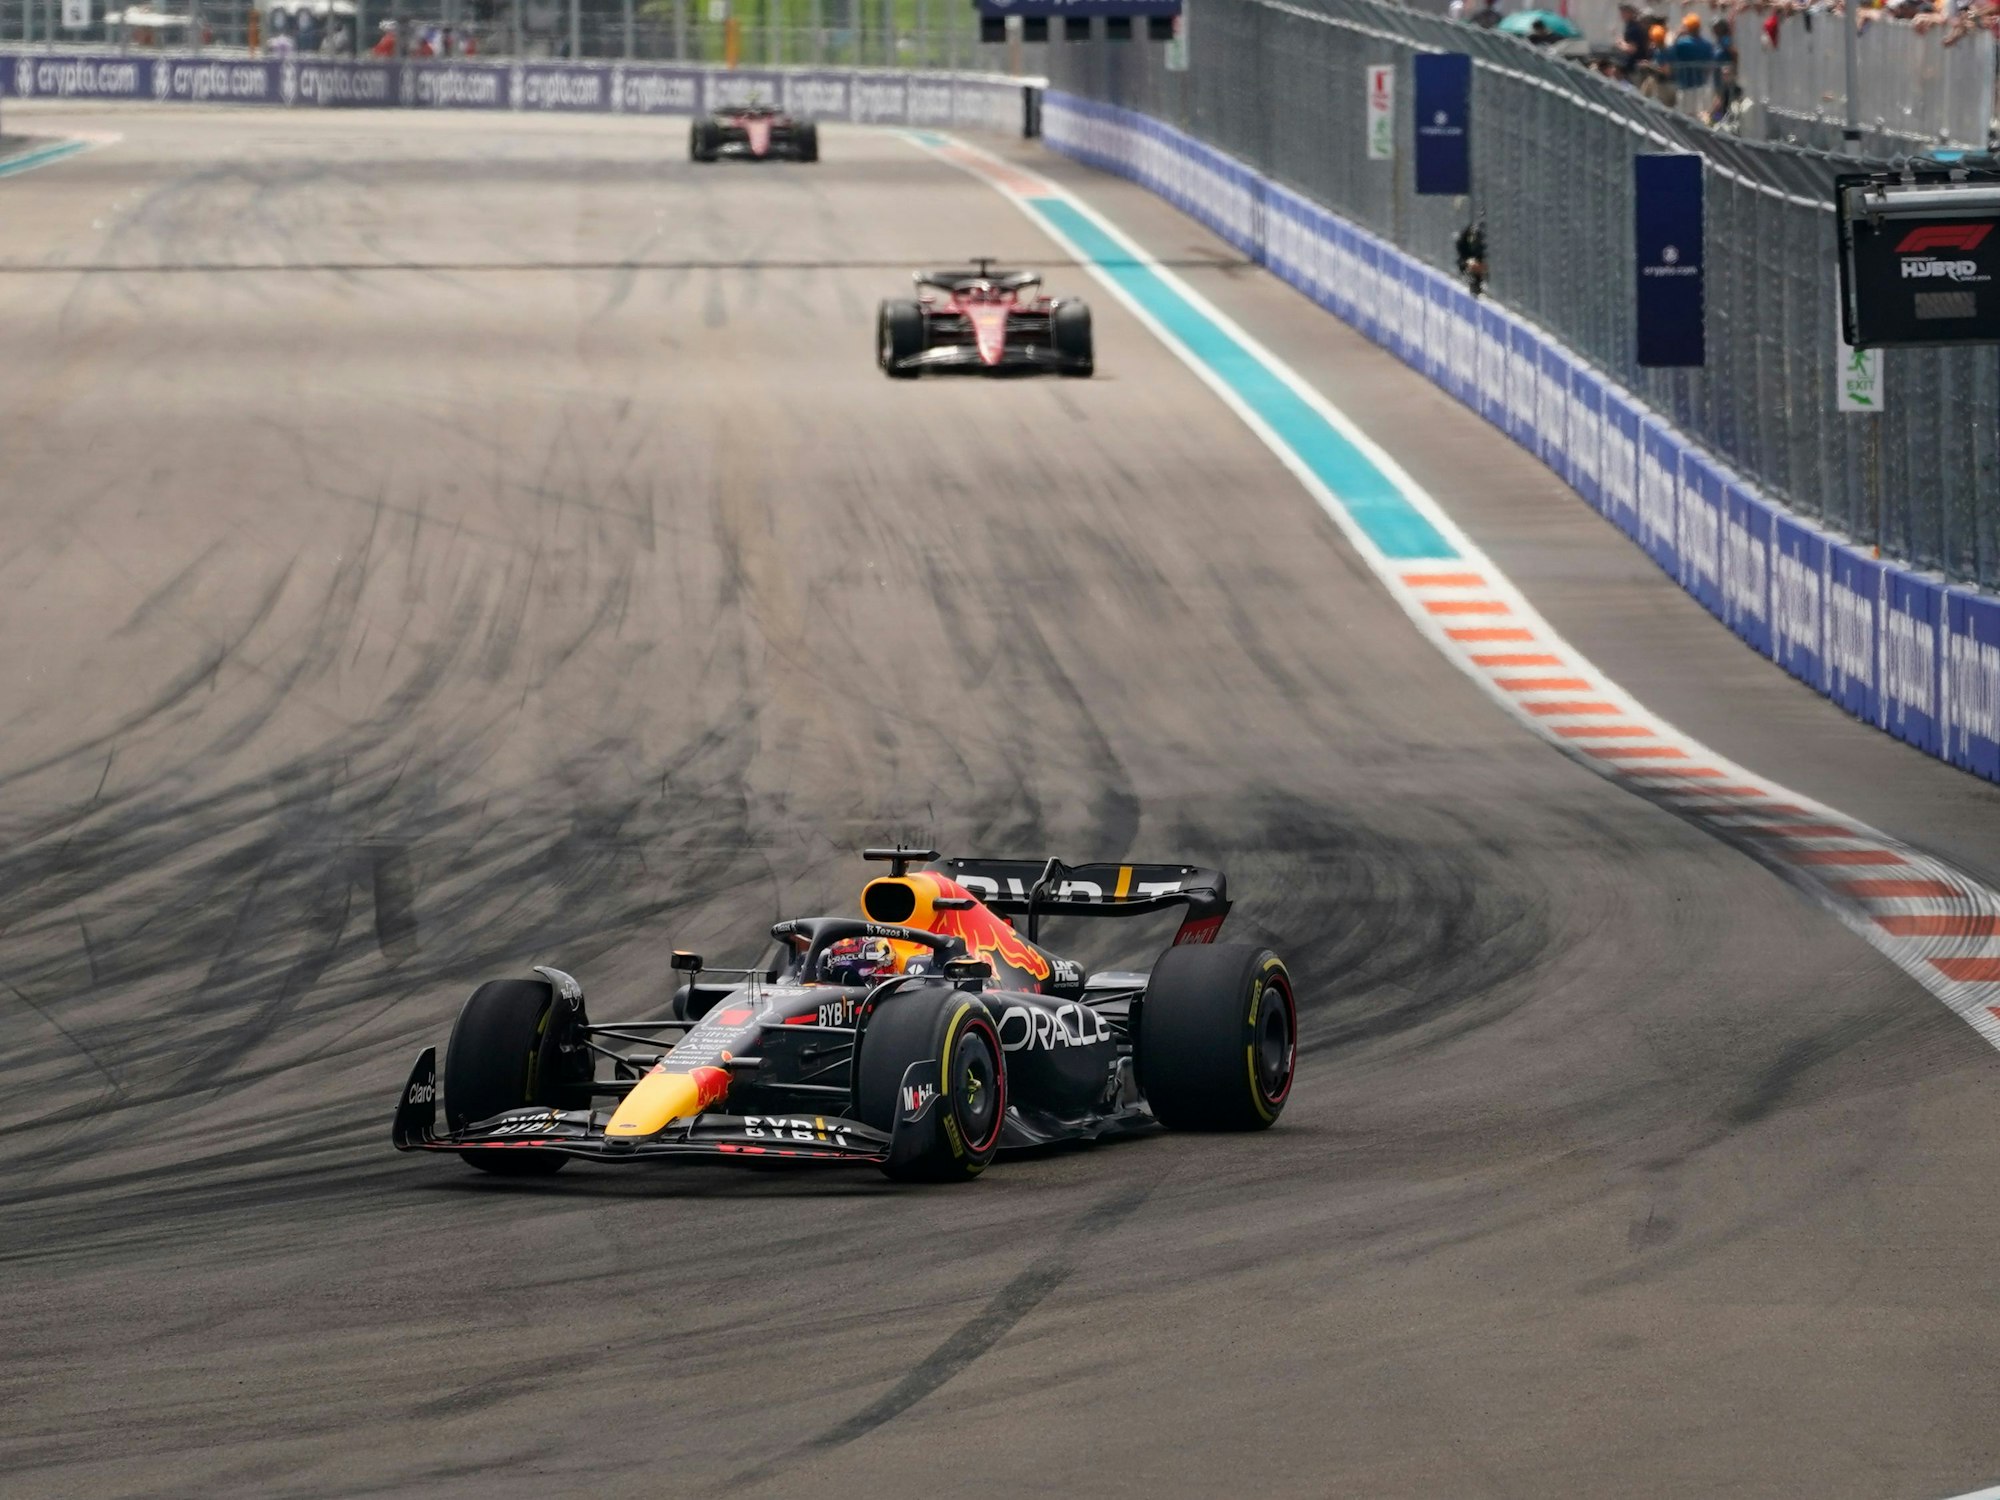 Motorsport: Formel-1-Weltmeisterschaft, Grand Prix von Miami, Rennen: Max Verstappen aus den Niederlanden vom Team Red Bull fährt vor Charles Leclerc aus Monaco vom Team Ferrari.